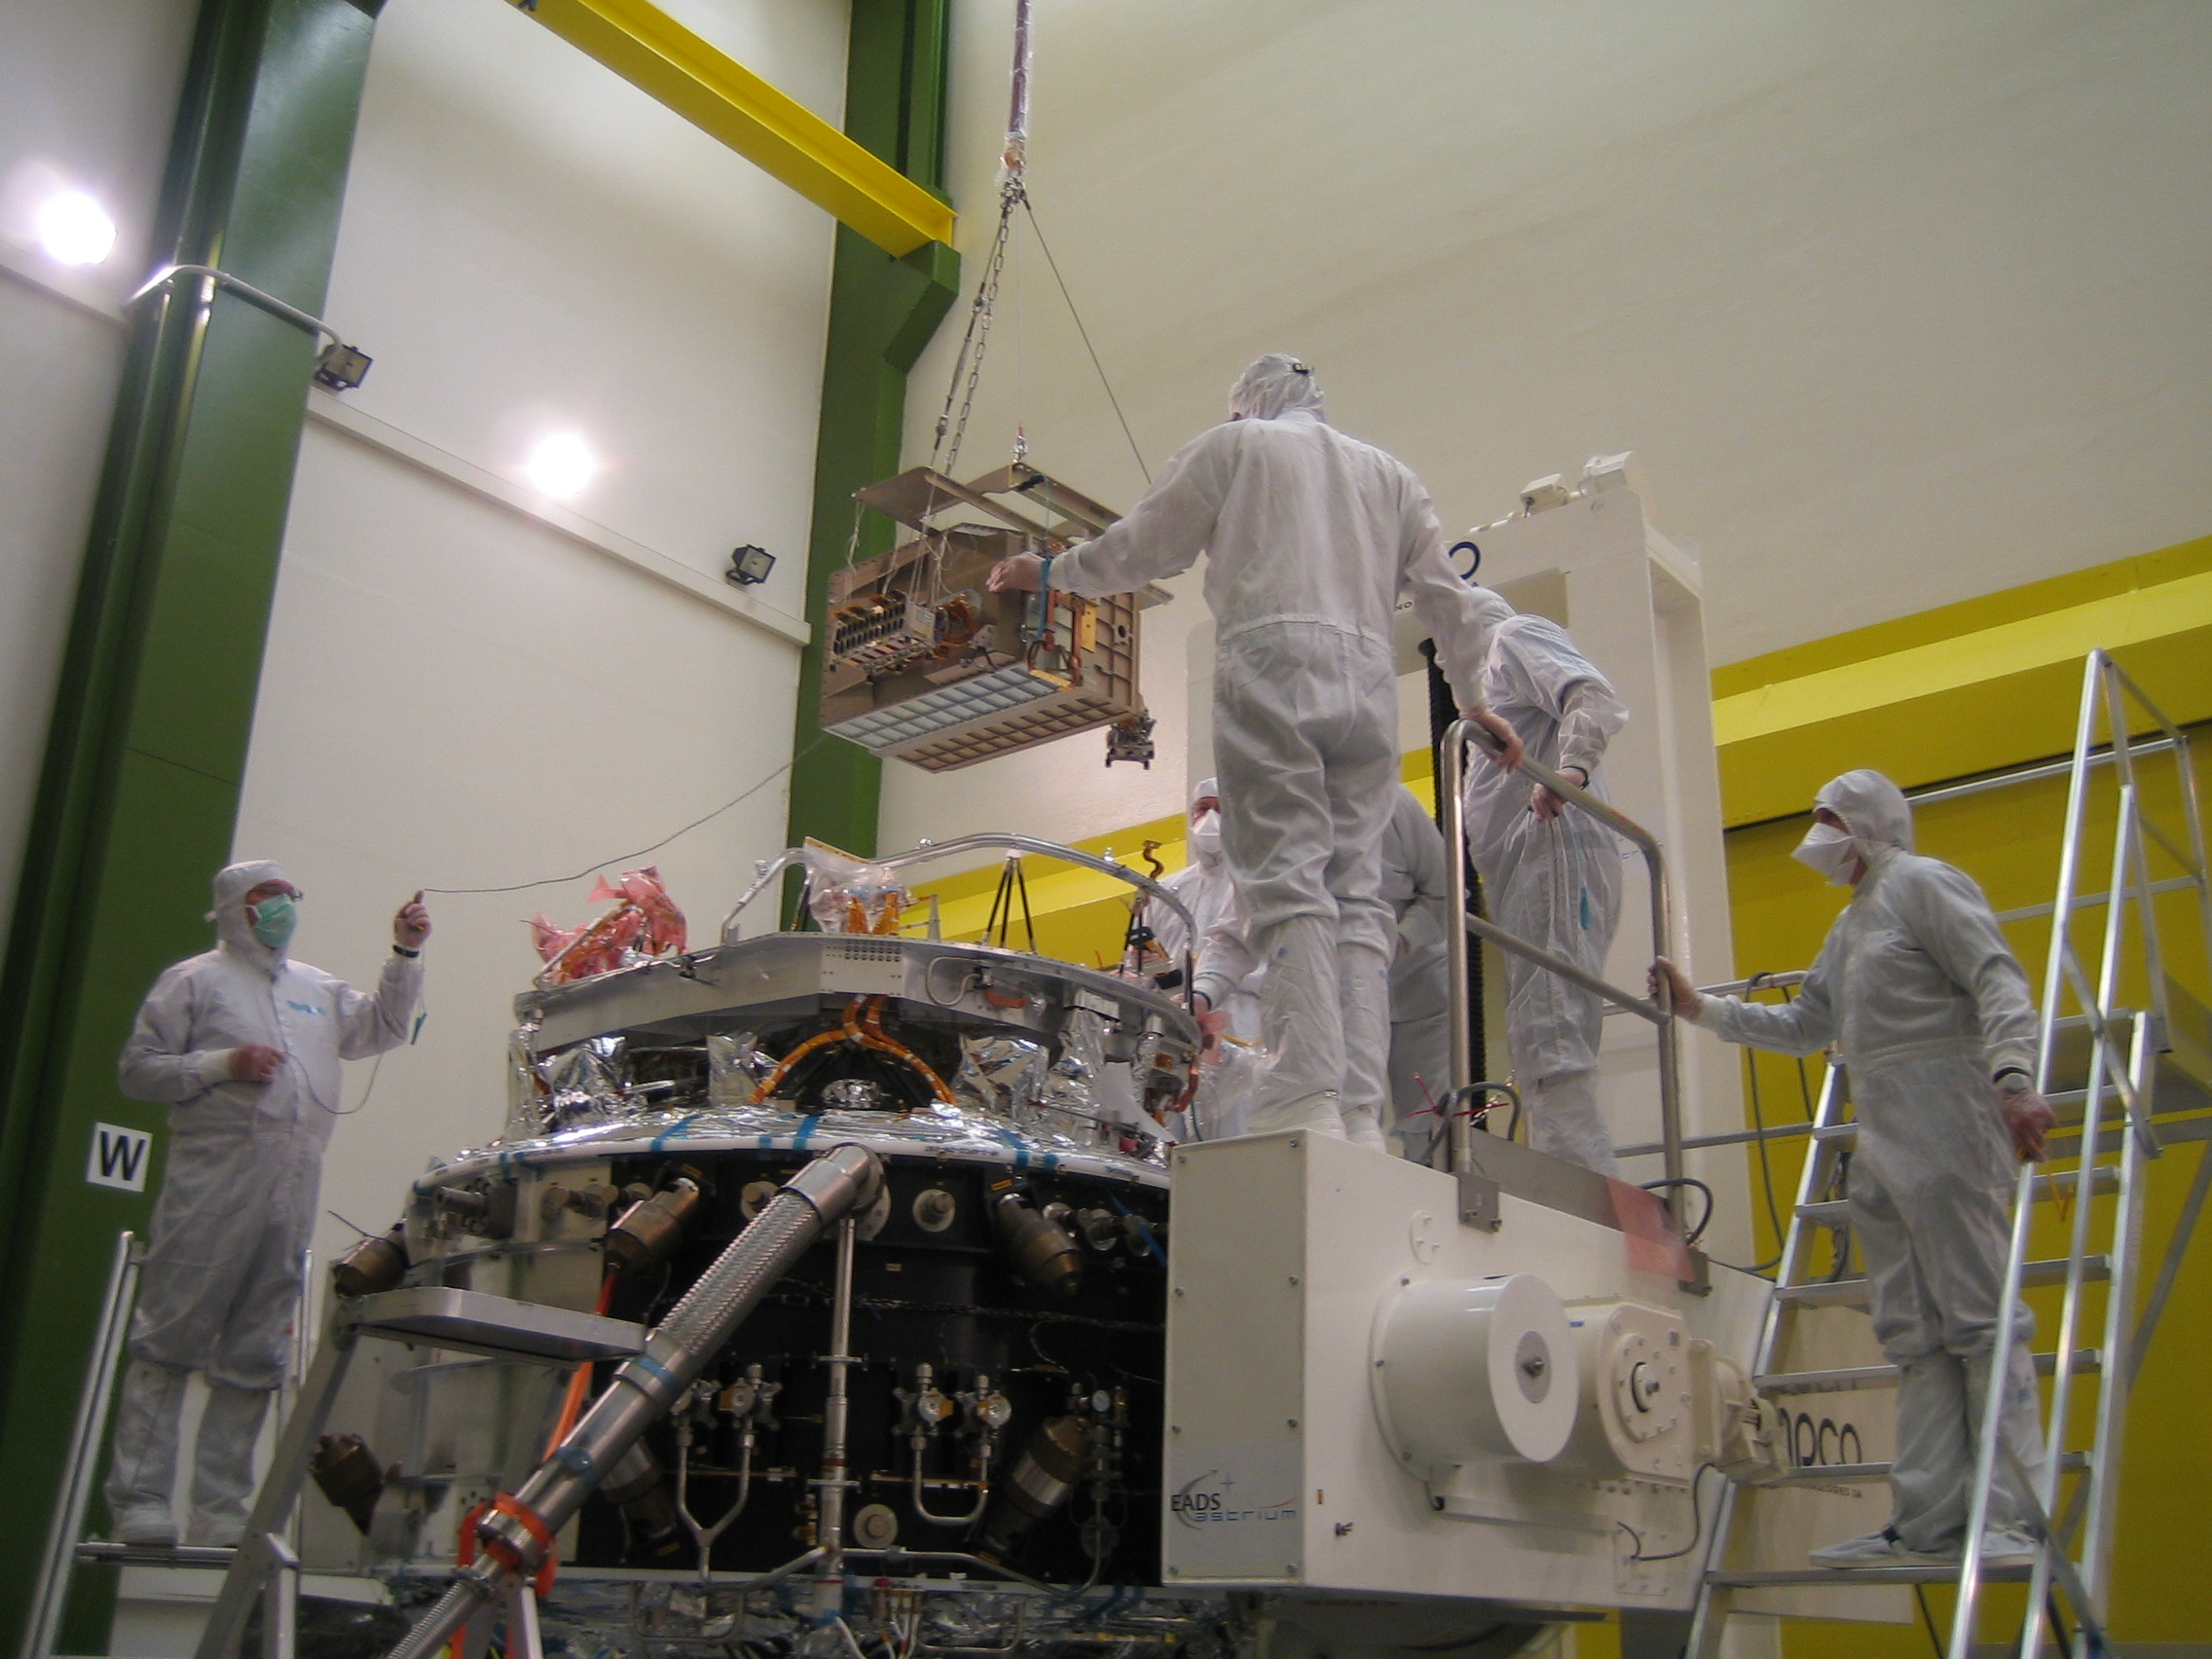 SPIRE FM FPU mounted on the Herschel flight cryostat optical bench in Astrium, Friedrichshafen, Germany.